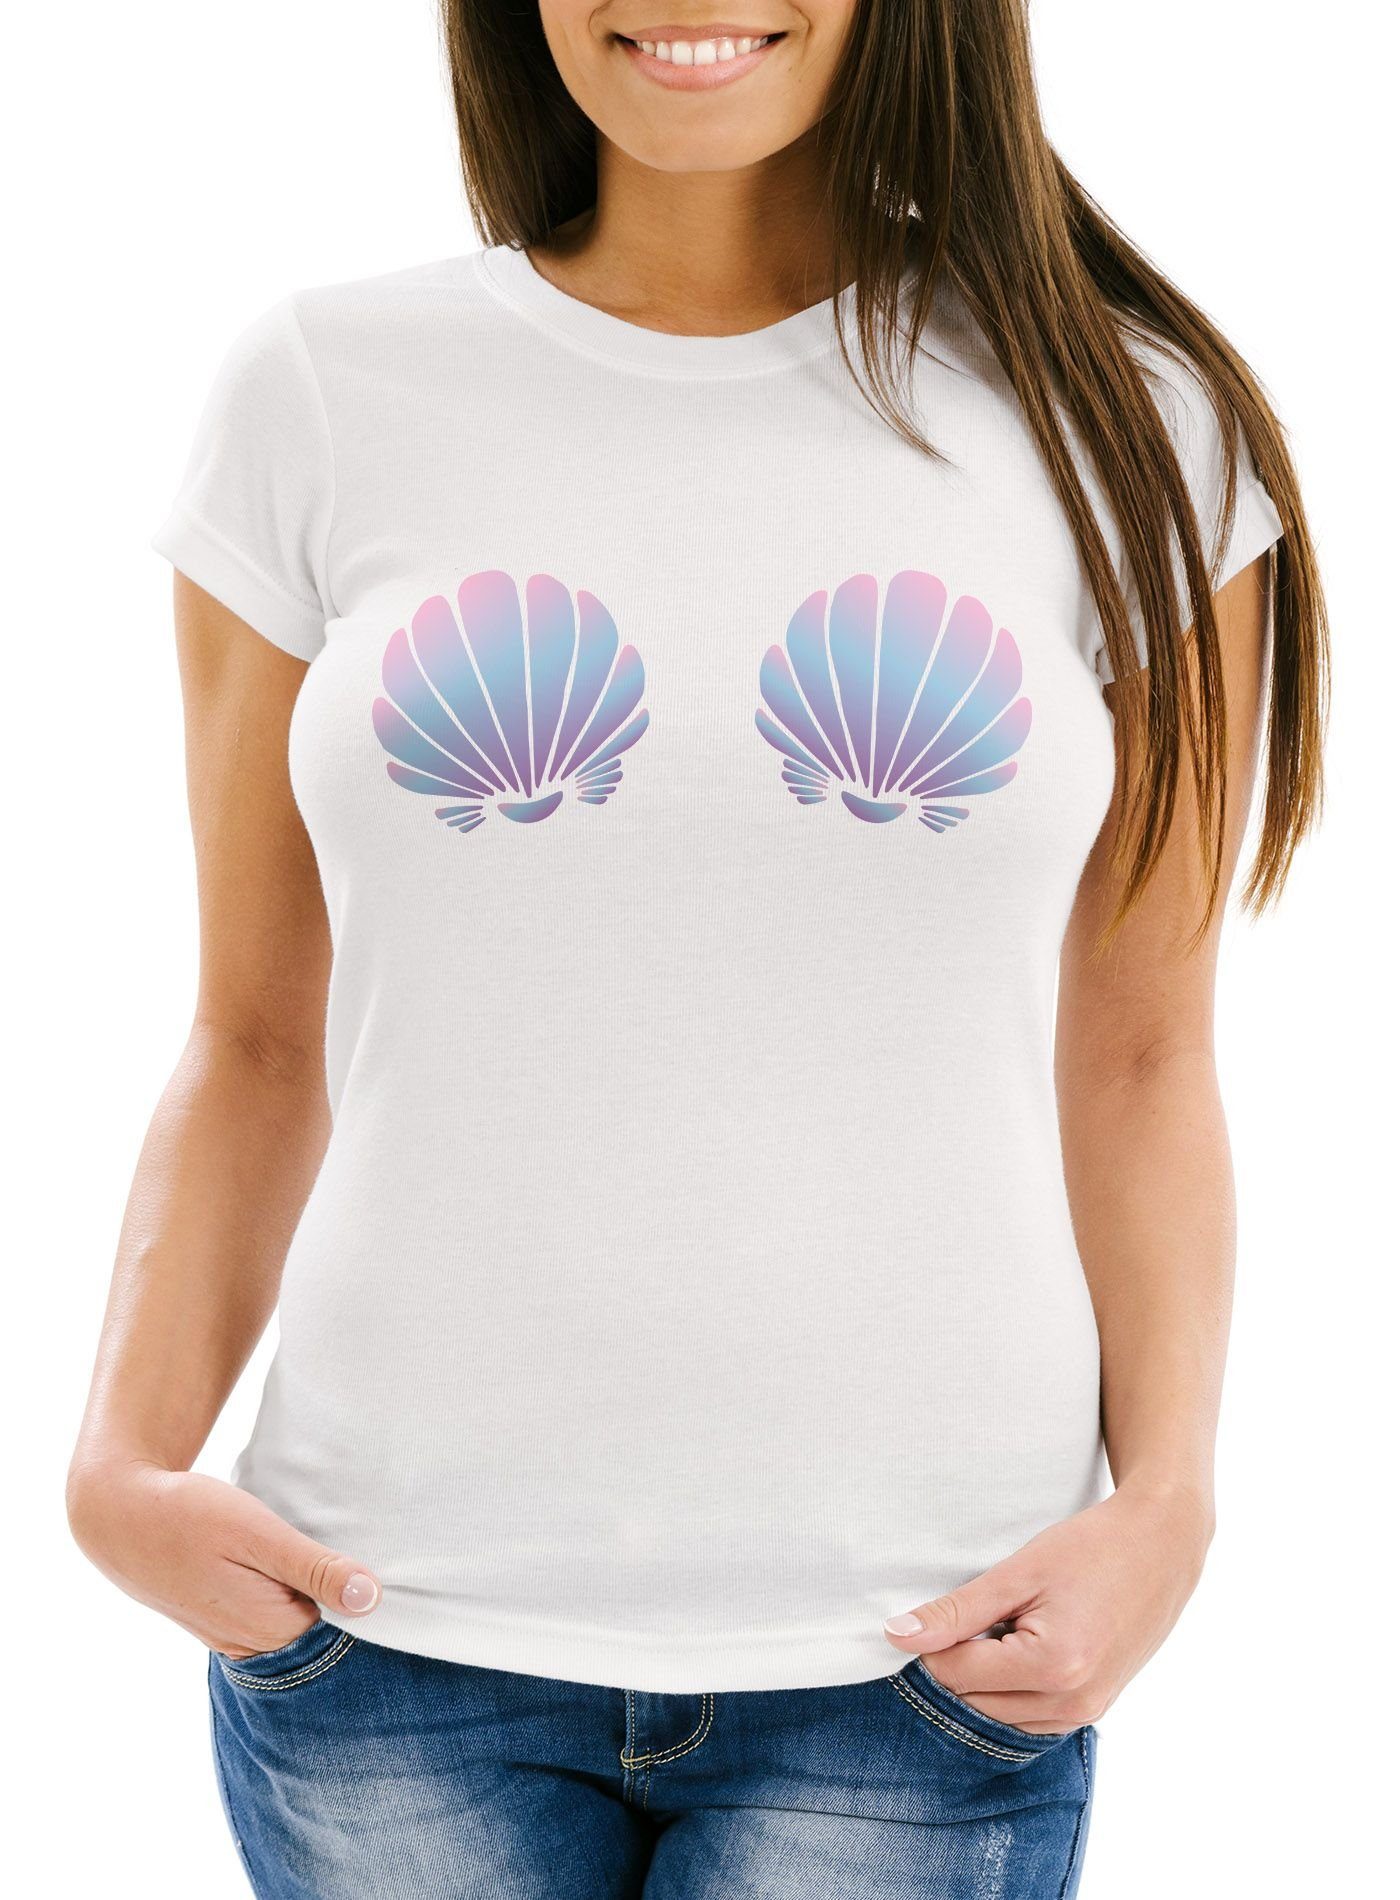 MoonWorks Print-Shirt Damen T-Shirt Meerjungfrau Muschel BH Fasching Karneval Mermaid Nixe Moonworks® mit Print